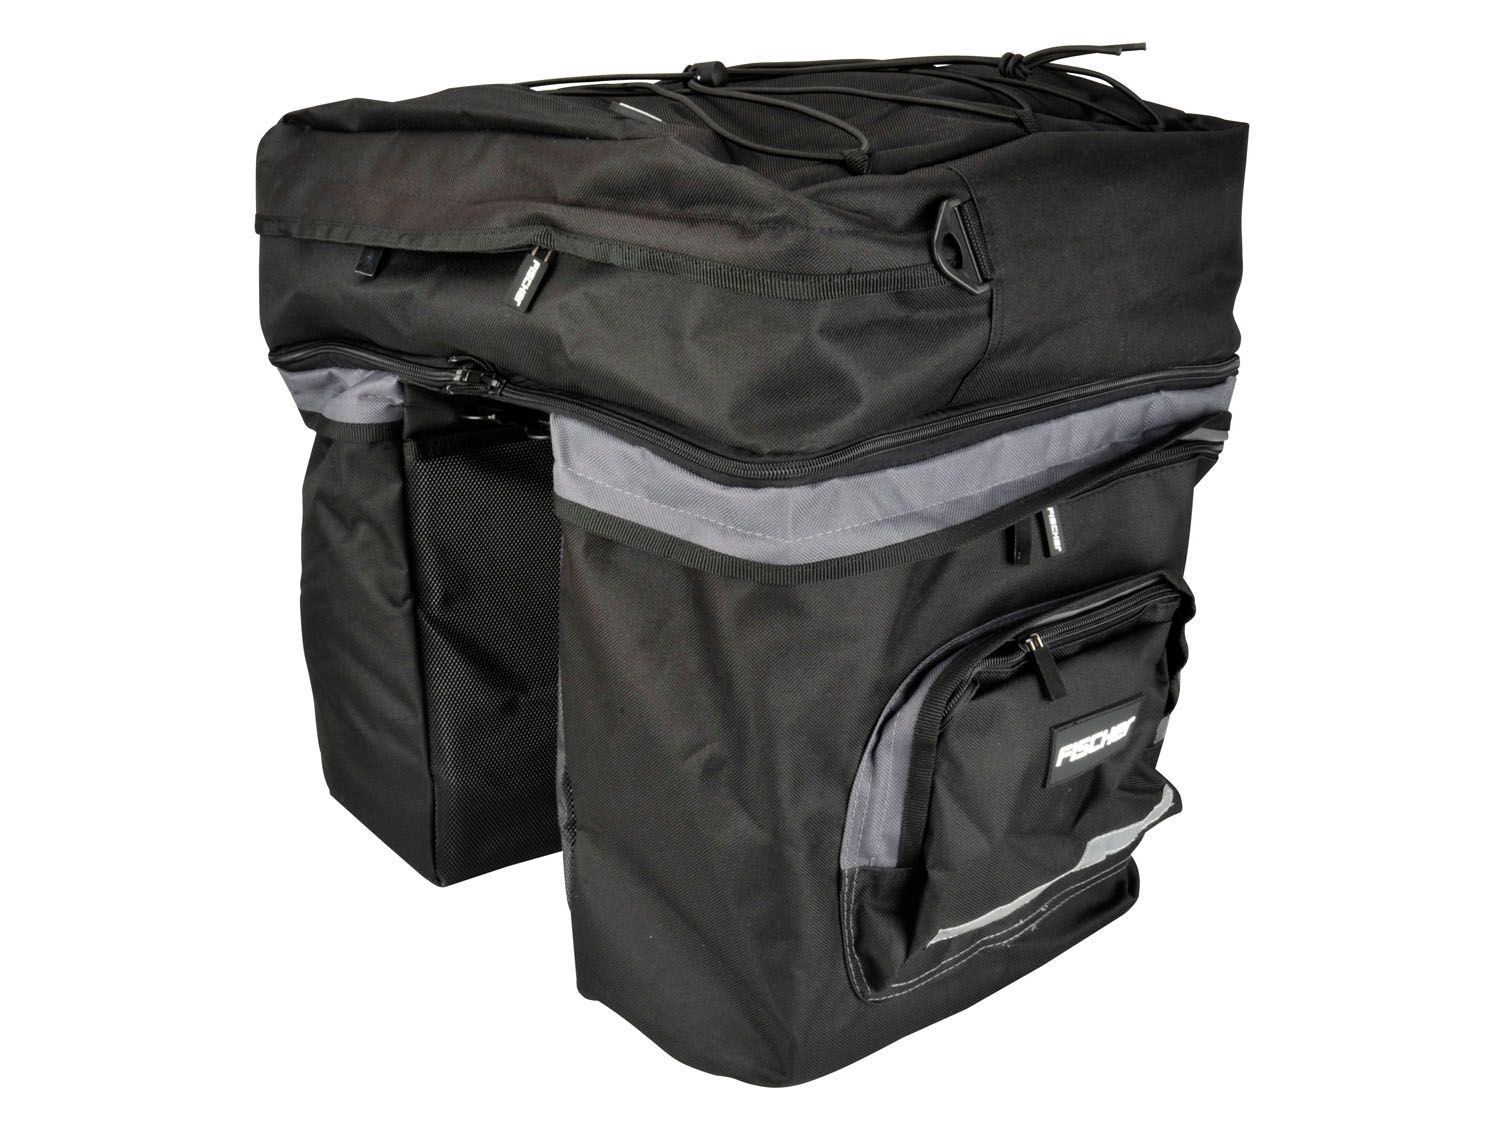 Fischer torba na bagażnik, czarny, jeden rozmiar 86245